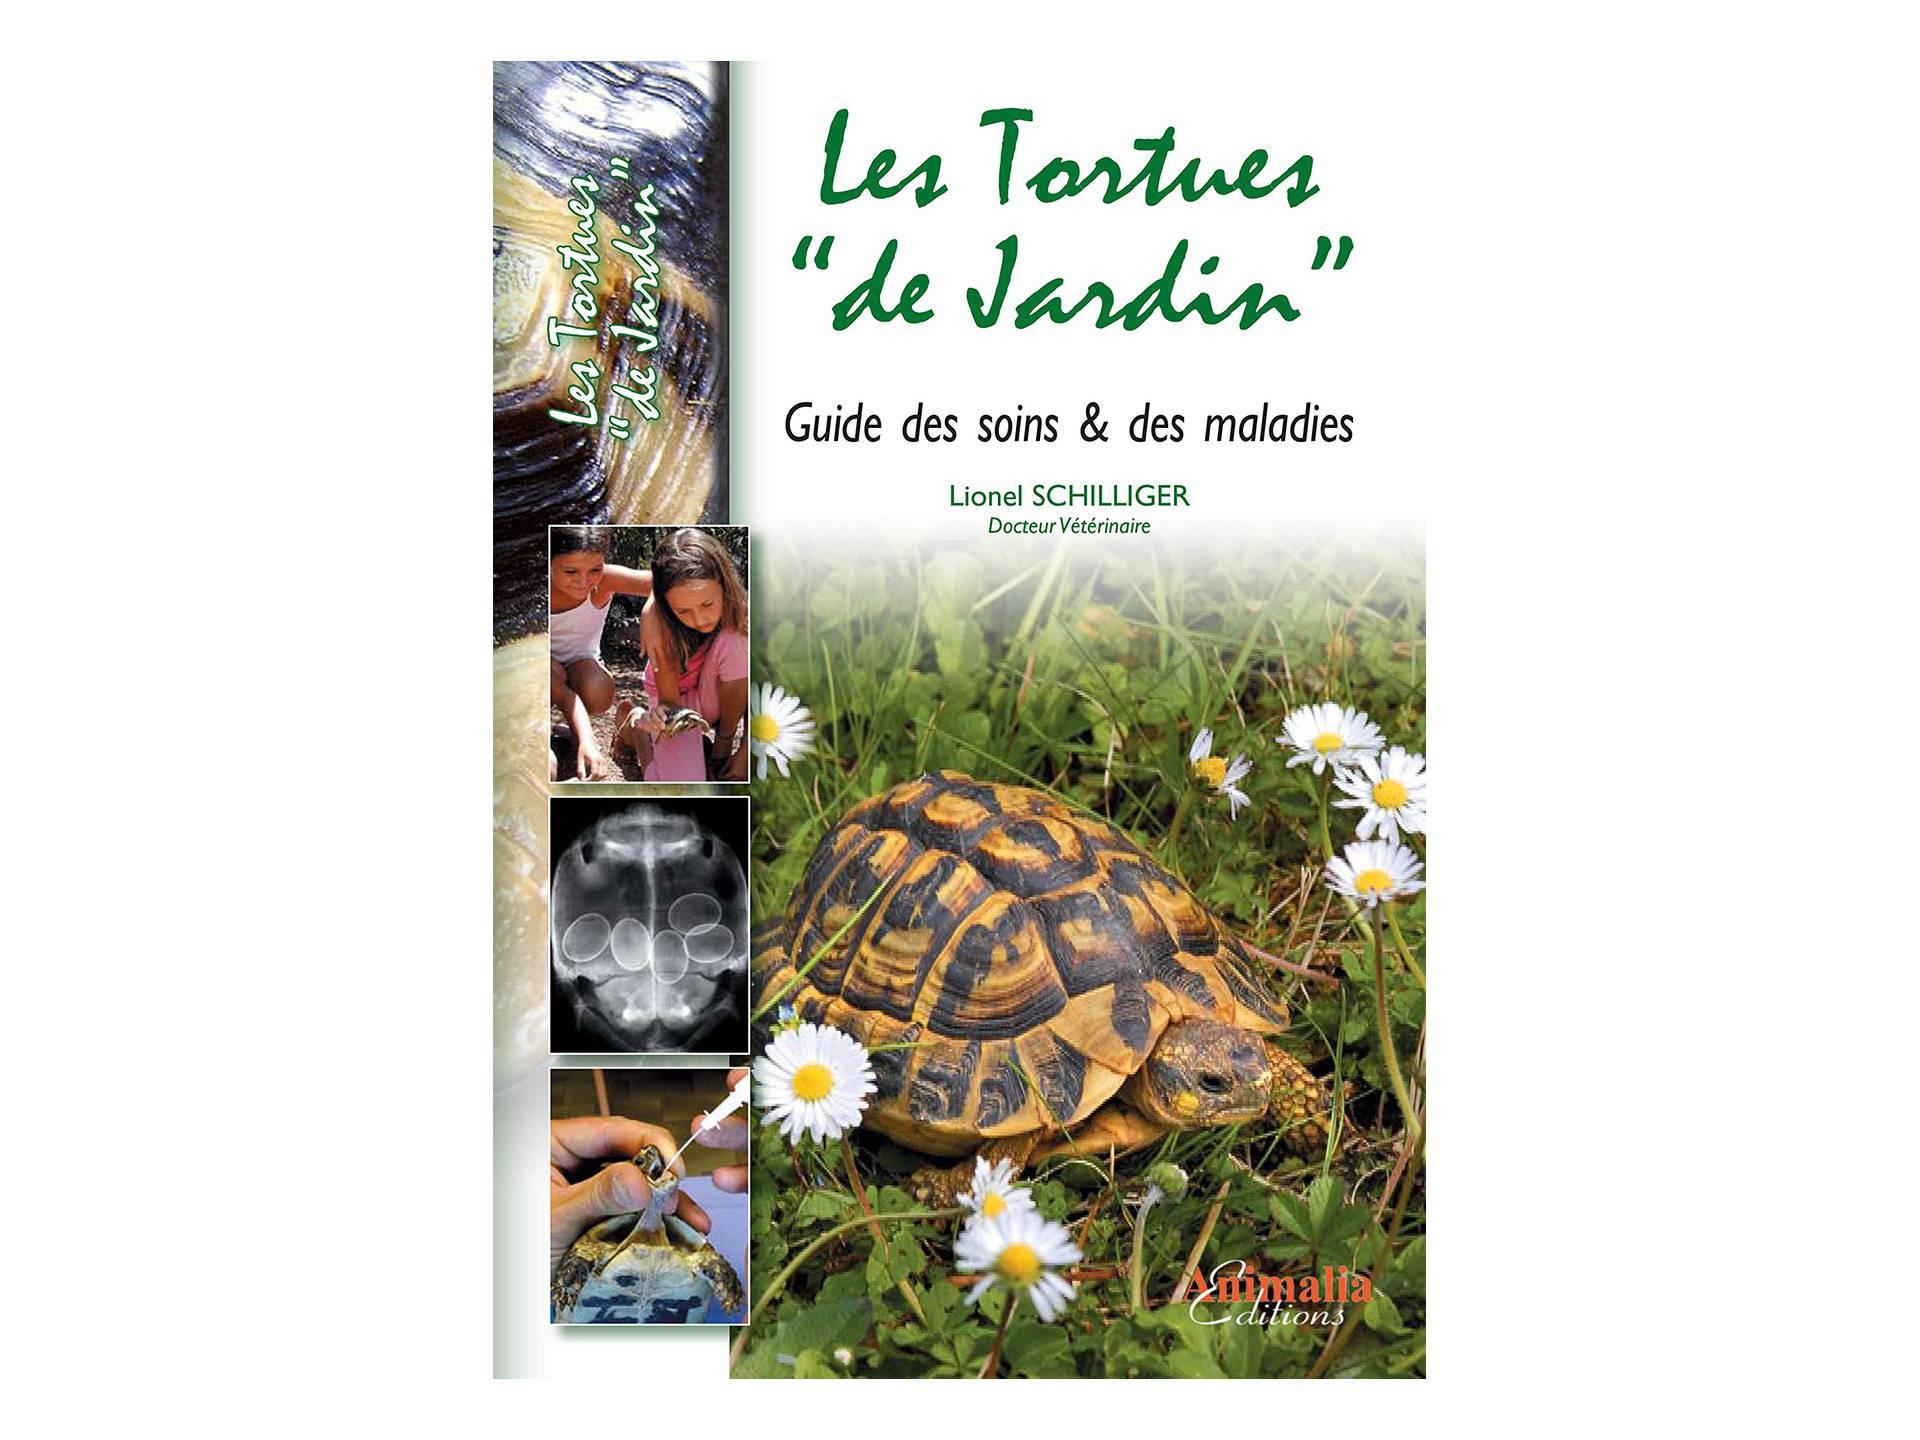 Livre Les tortues de jardin Soins et Maladies Lionel Schilliger huitième